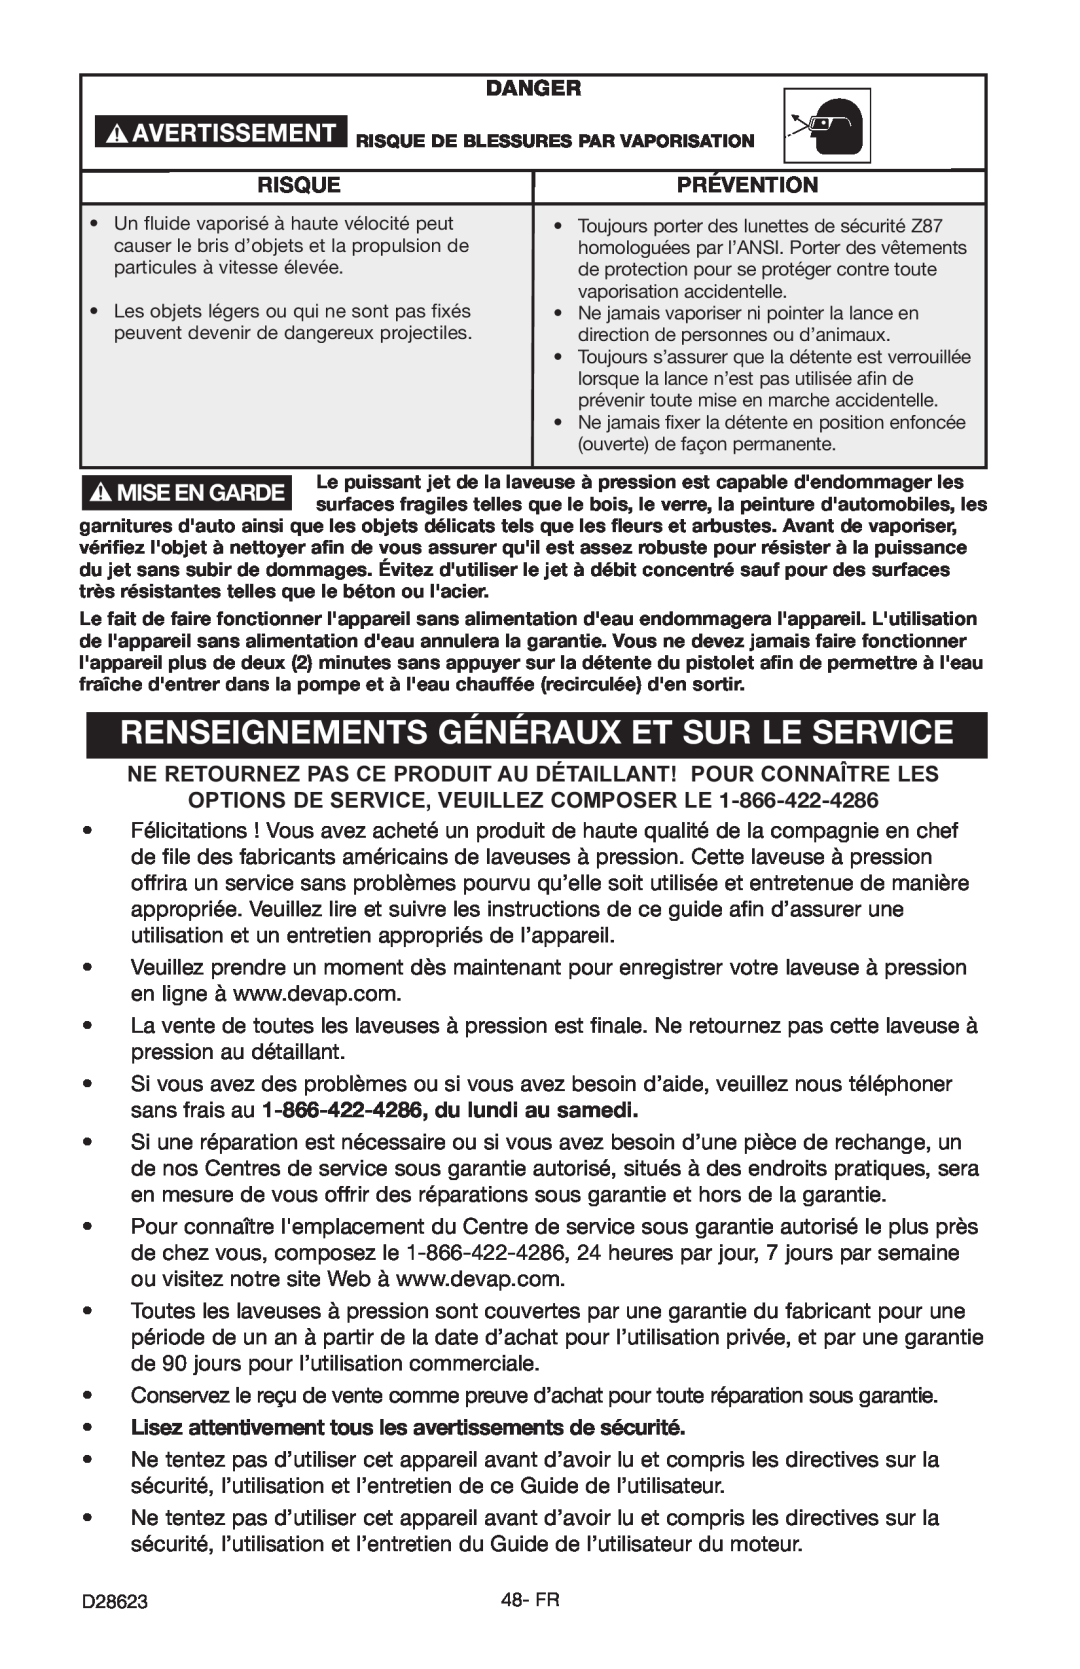 Delta D28623 instruction manual Renseignements Généraux Et Sur Le Service, Danger, Risque, Prévention 